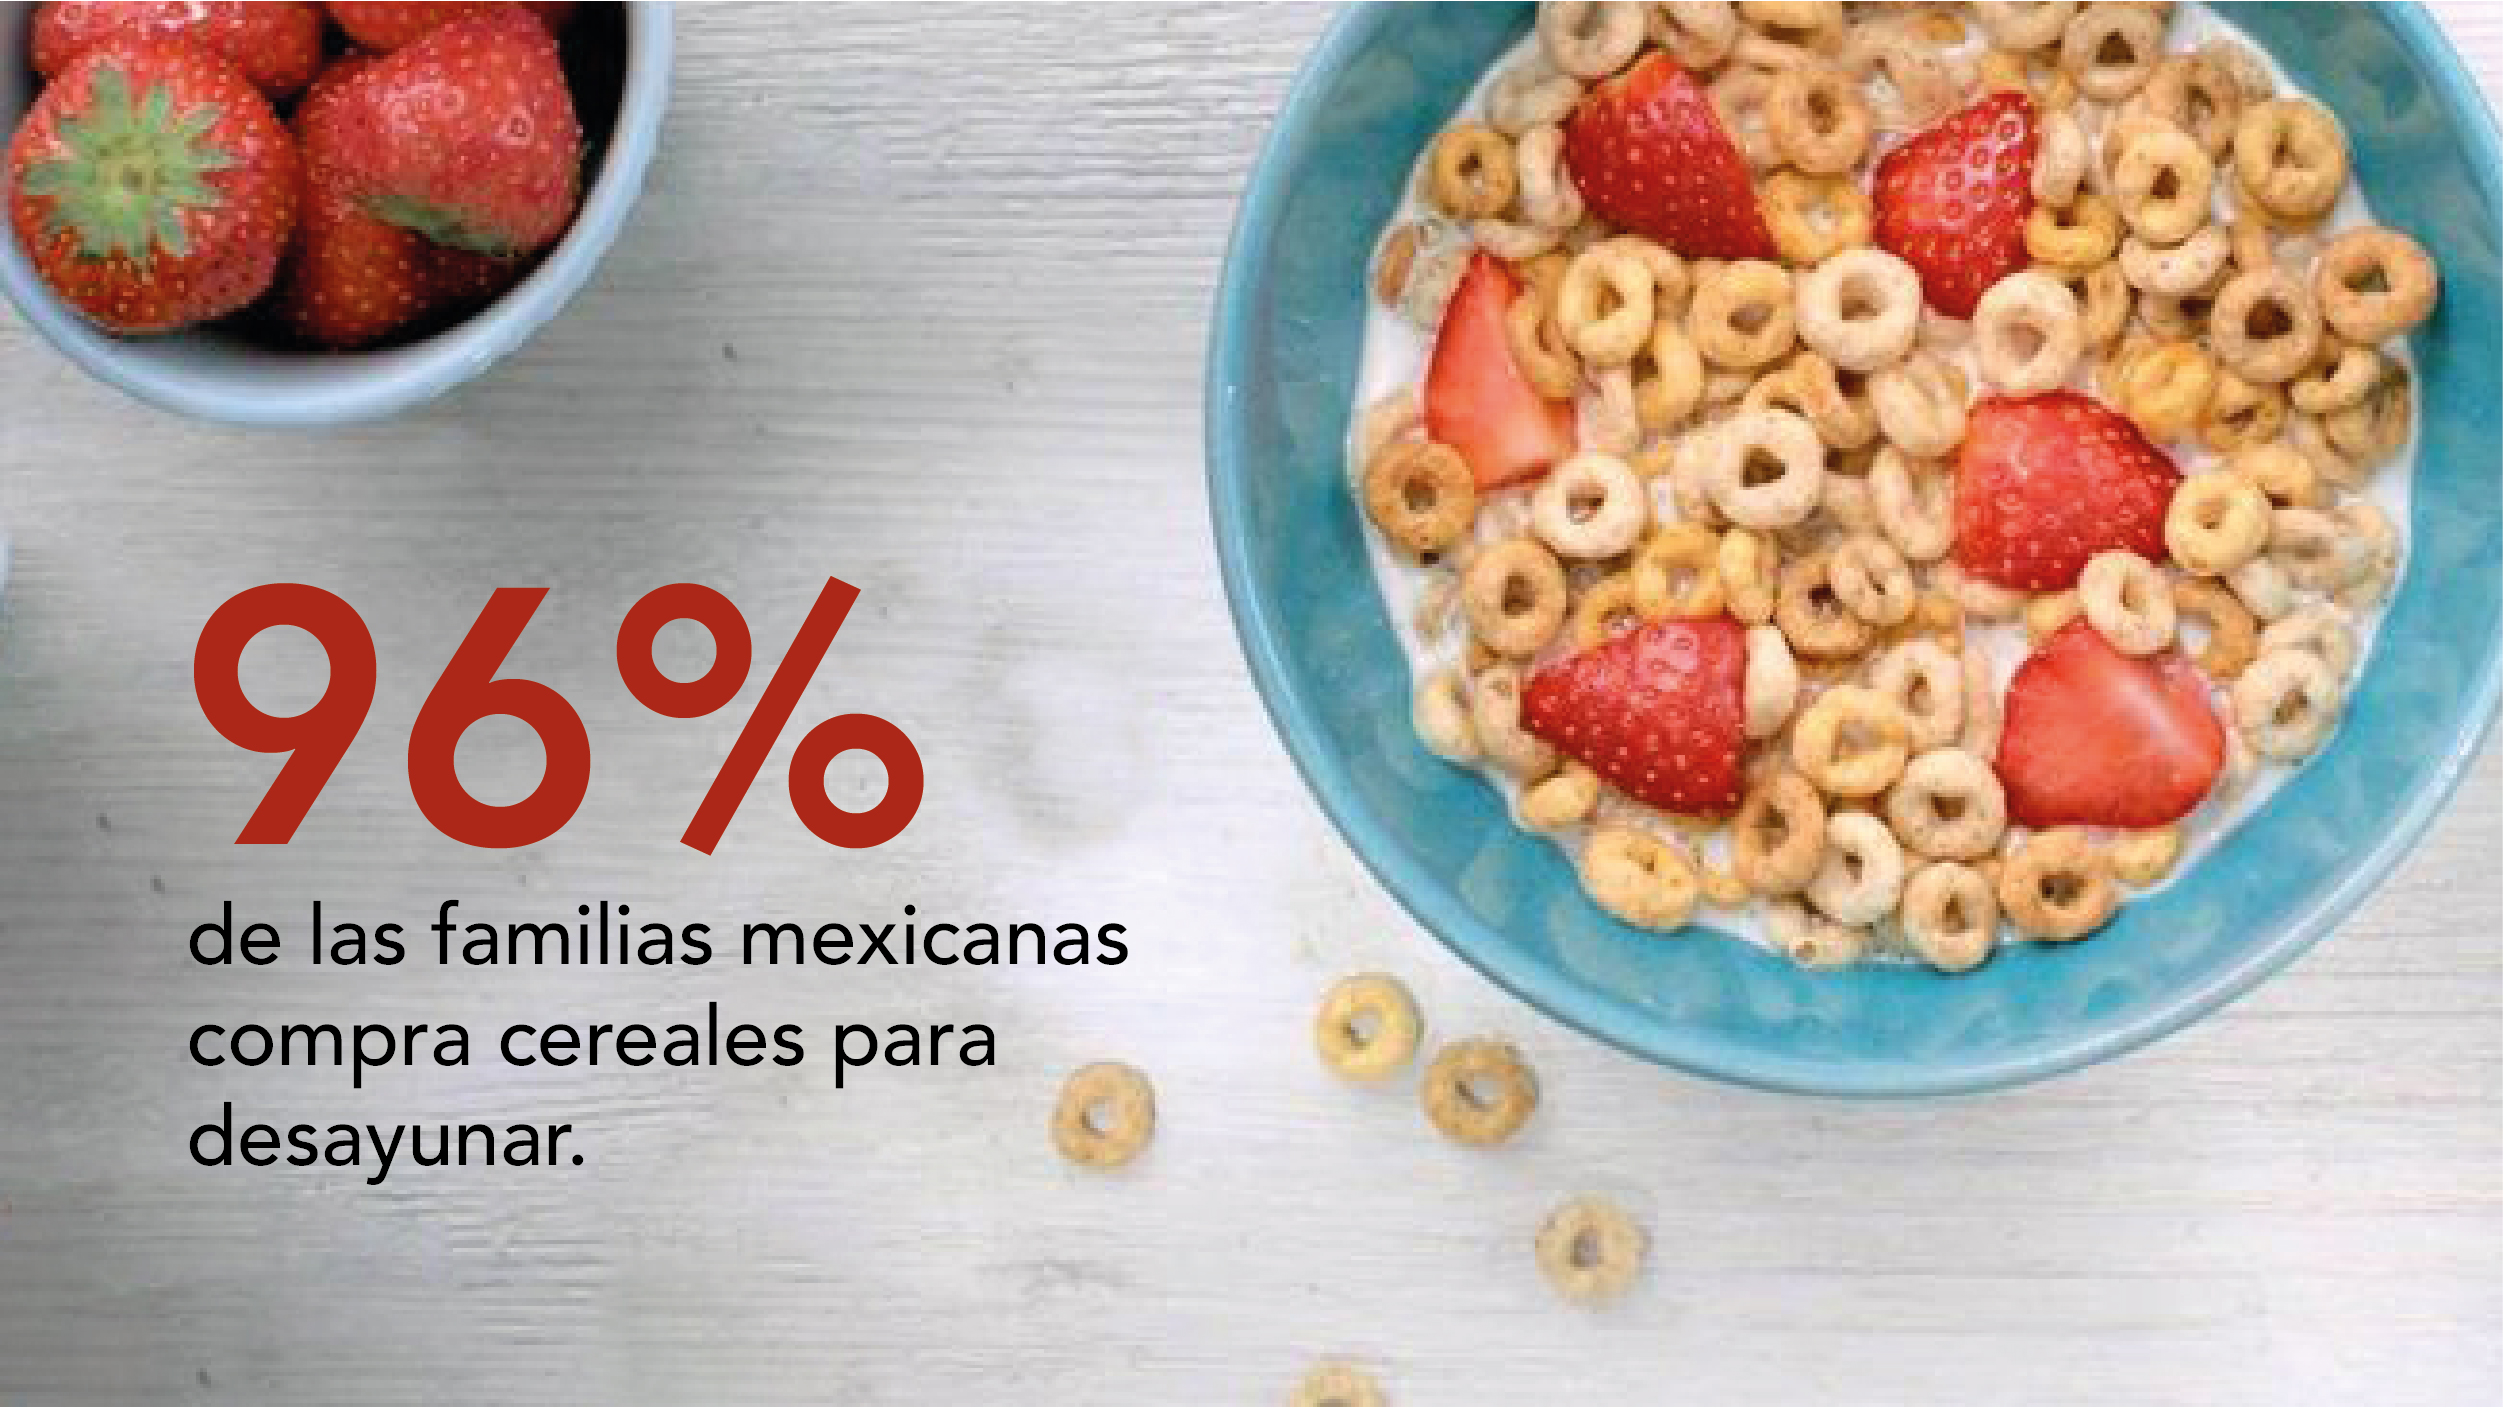 En México 96% de las familias consume cereales